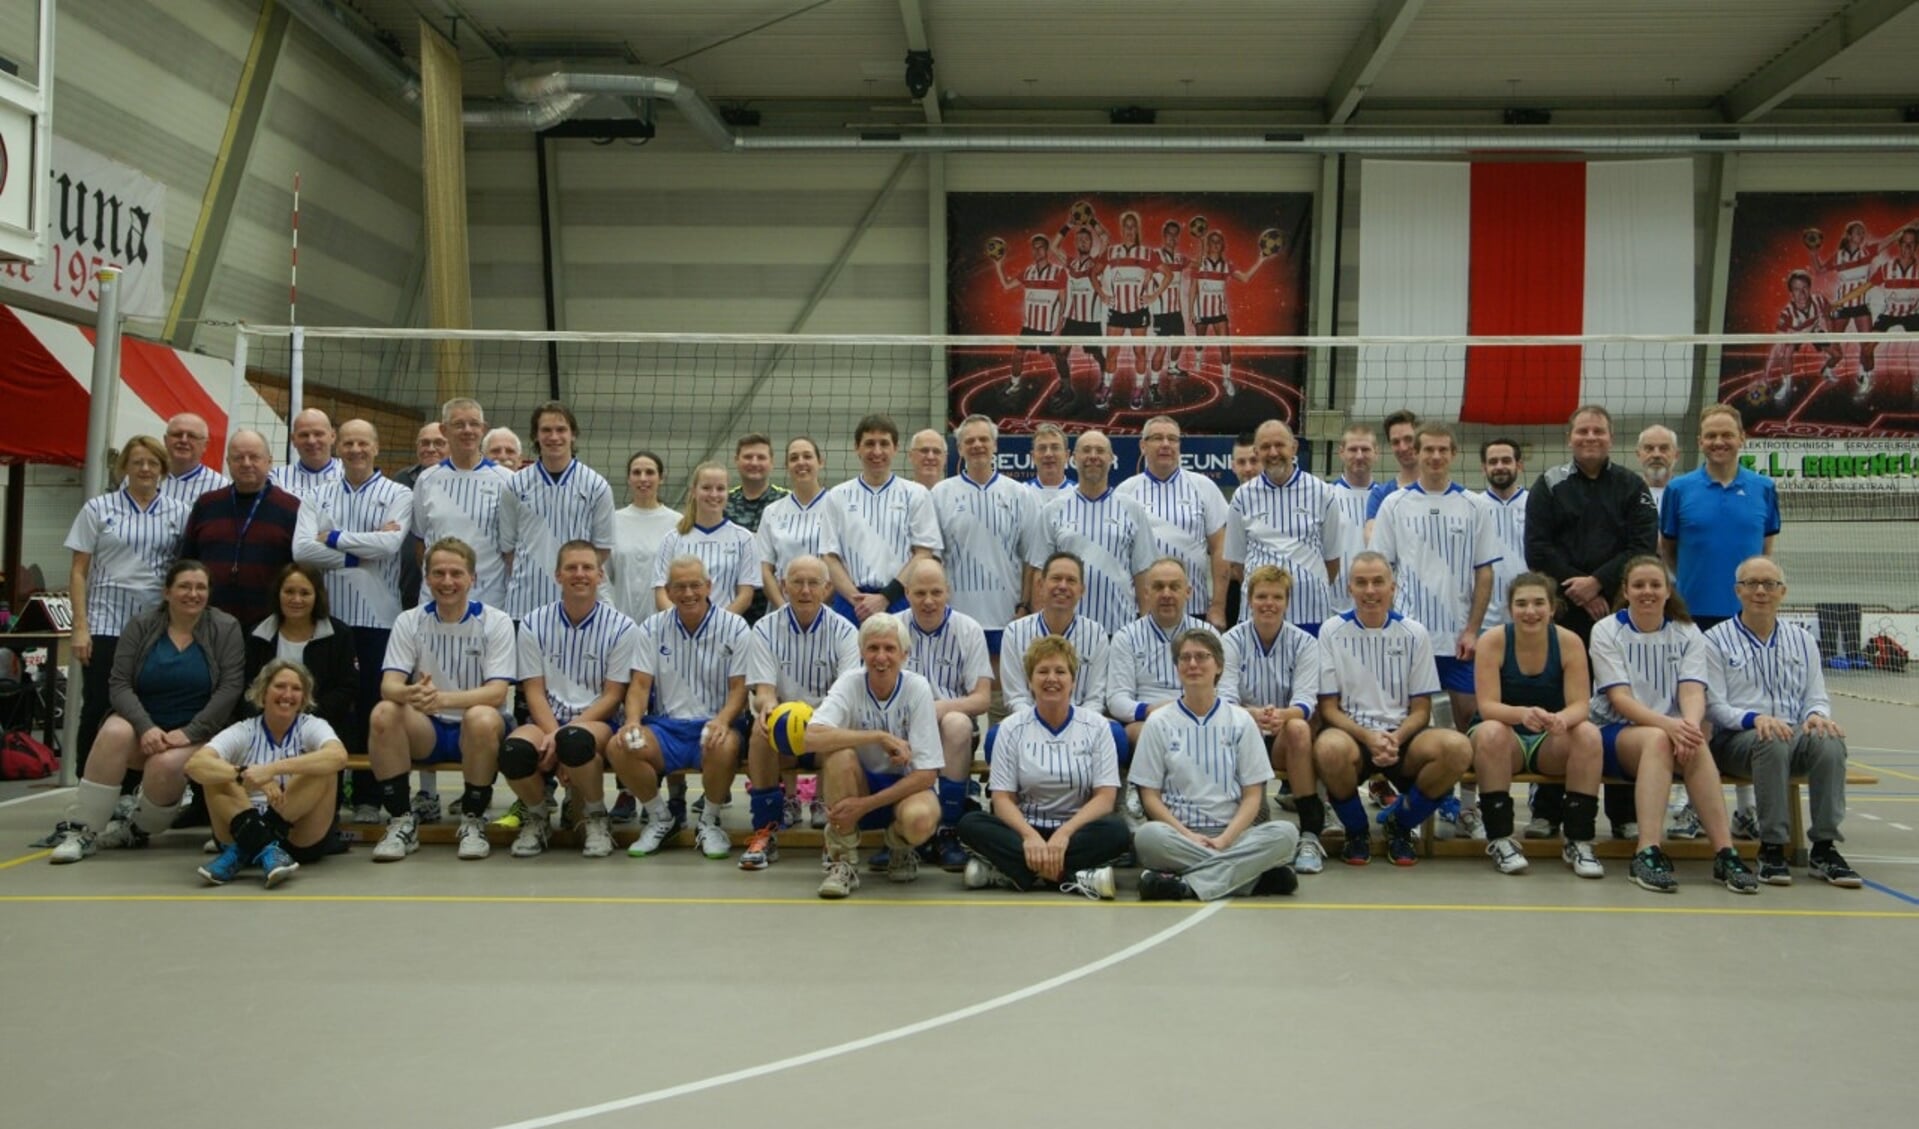 Het volledige ledenaantal van volleybalclub verenigd op de foto